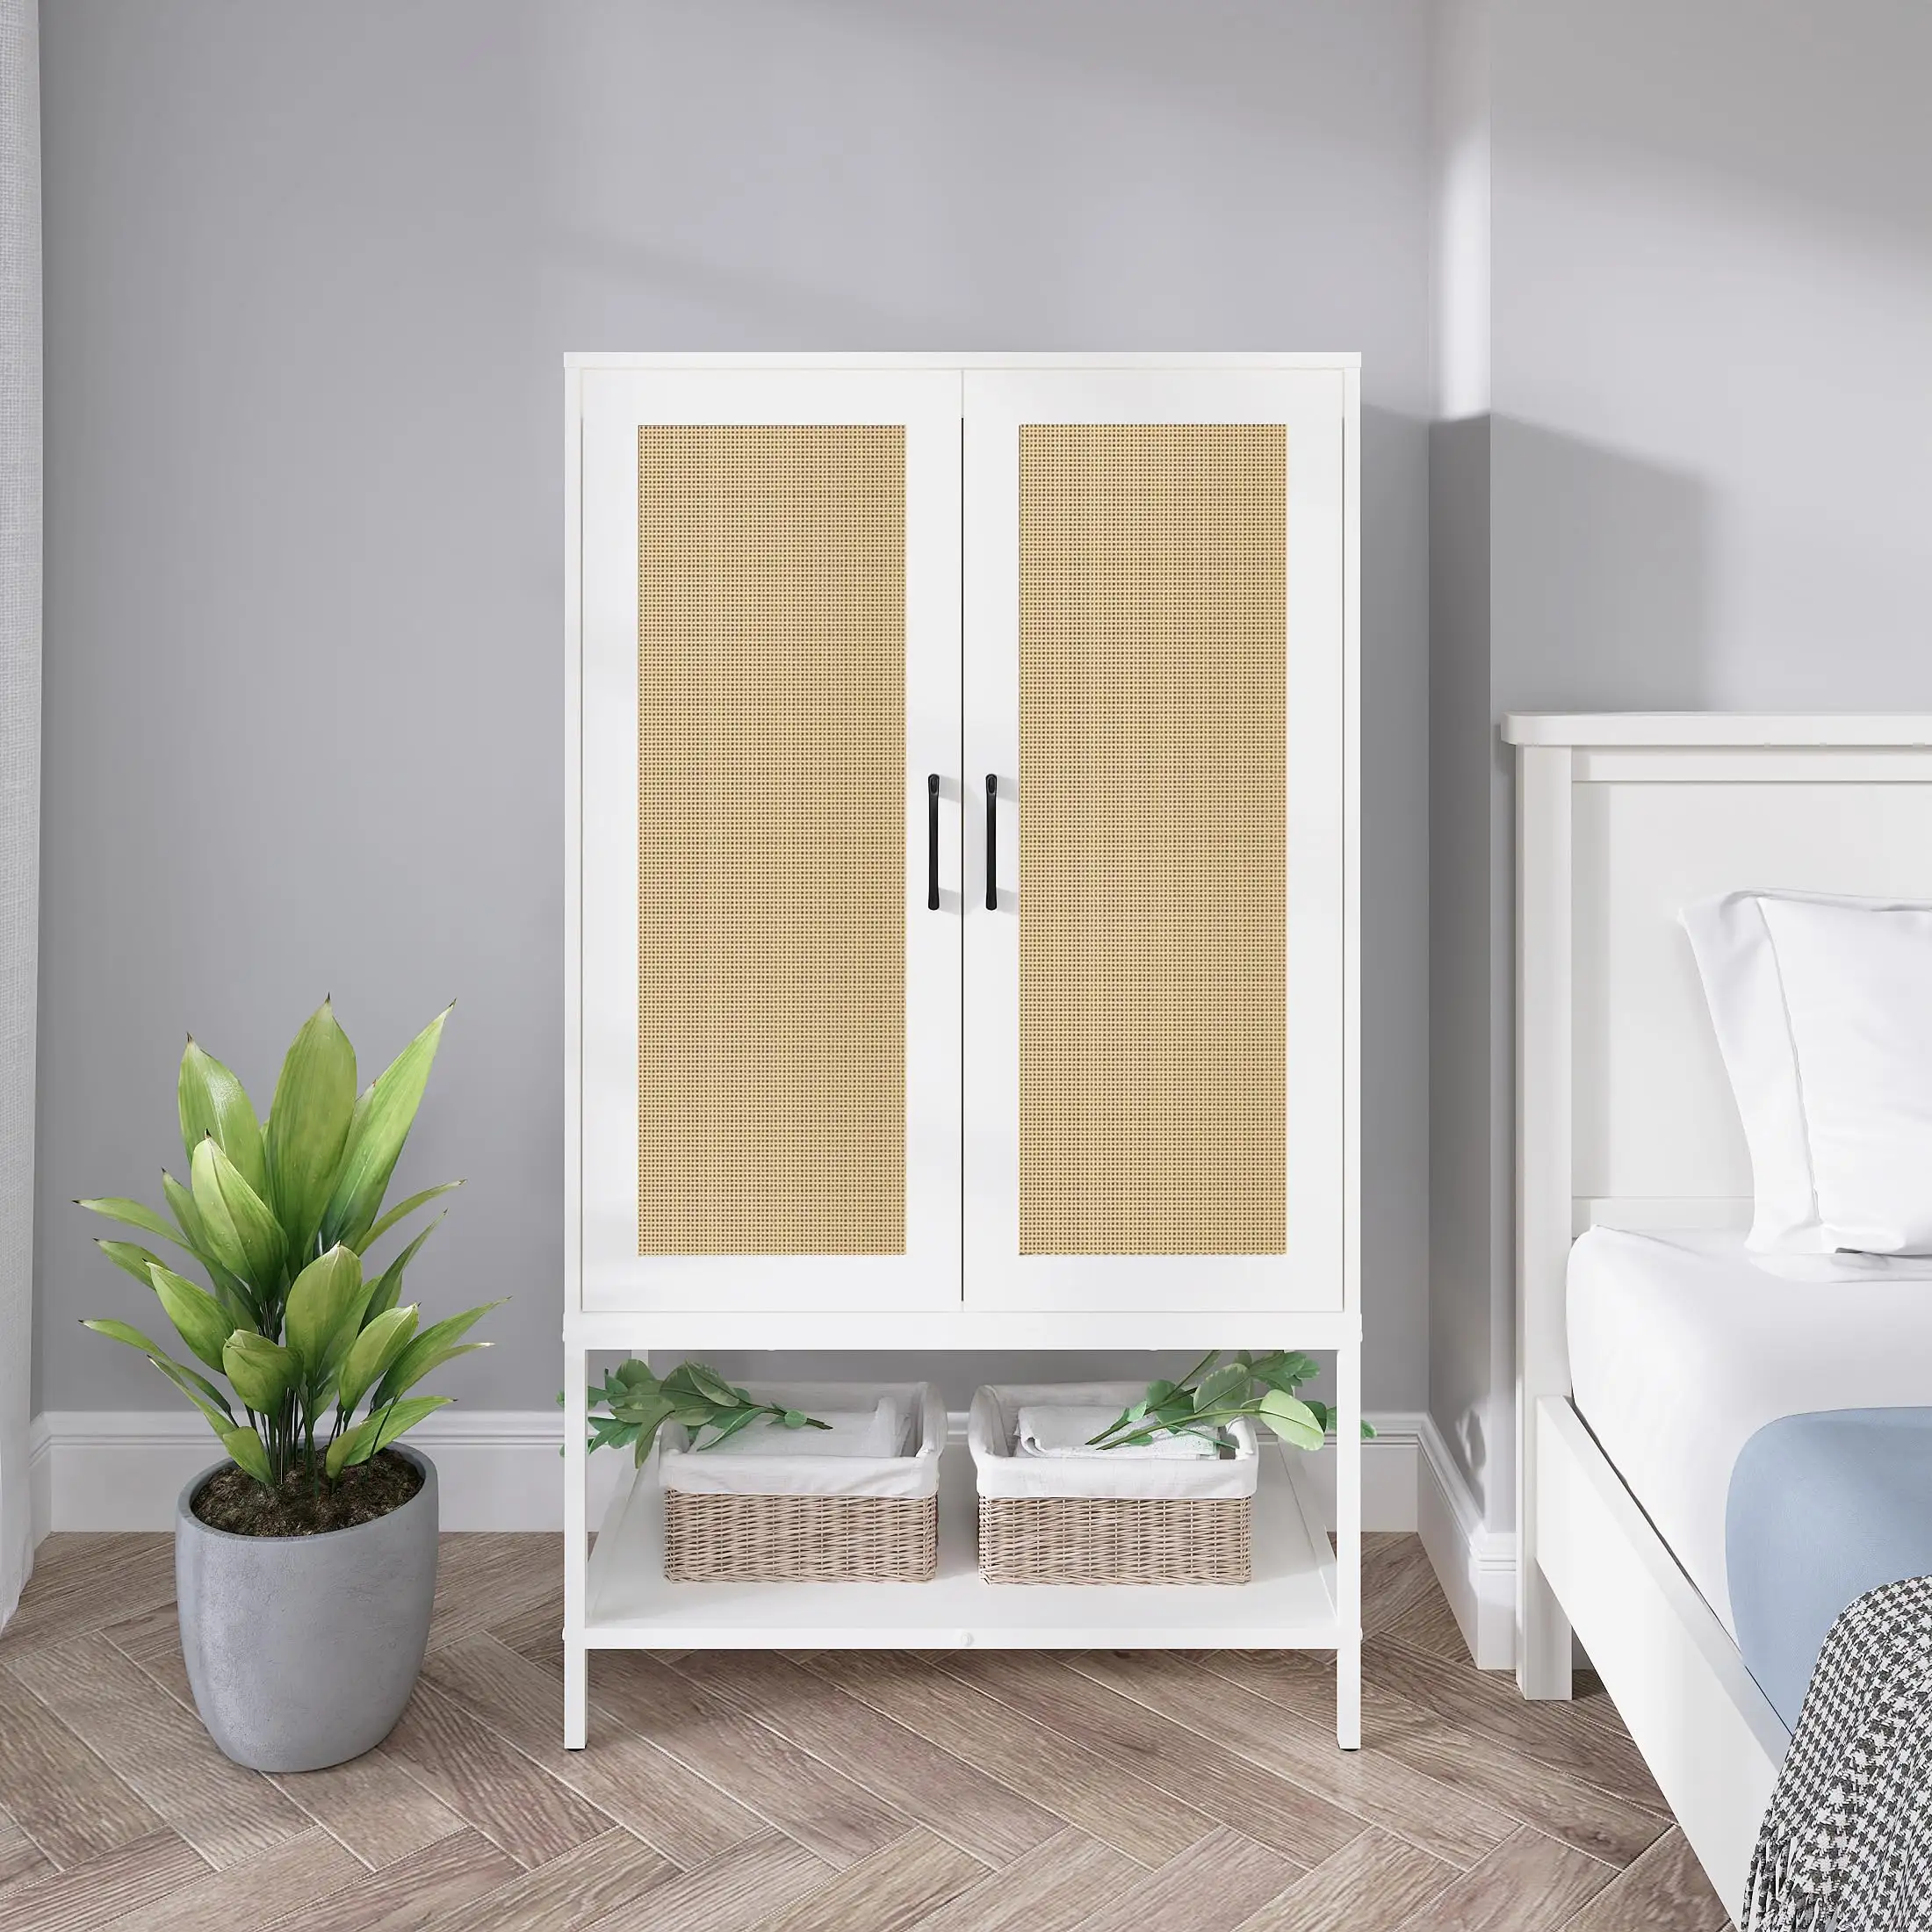 2 개의 문이있는 옷장 옷장 교수형 막대가있는 등나무 침실 선반이있는 독립형 나무 옷장 캐비닛 흰색